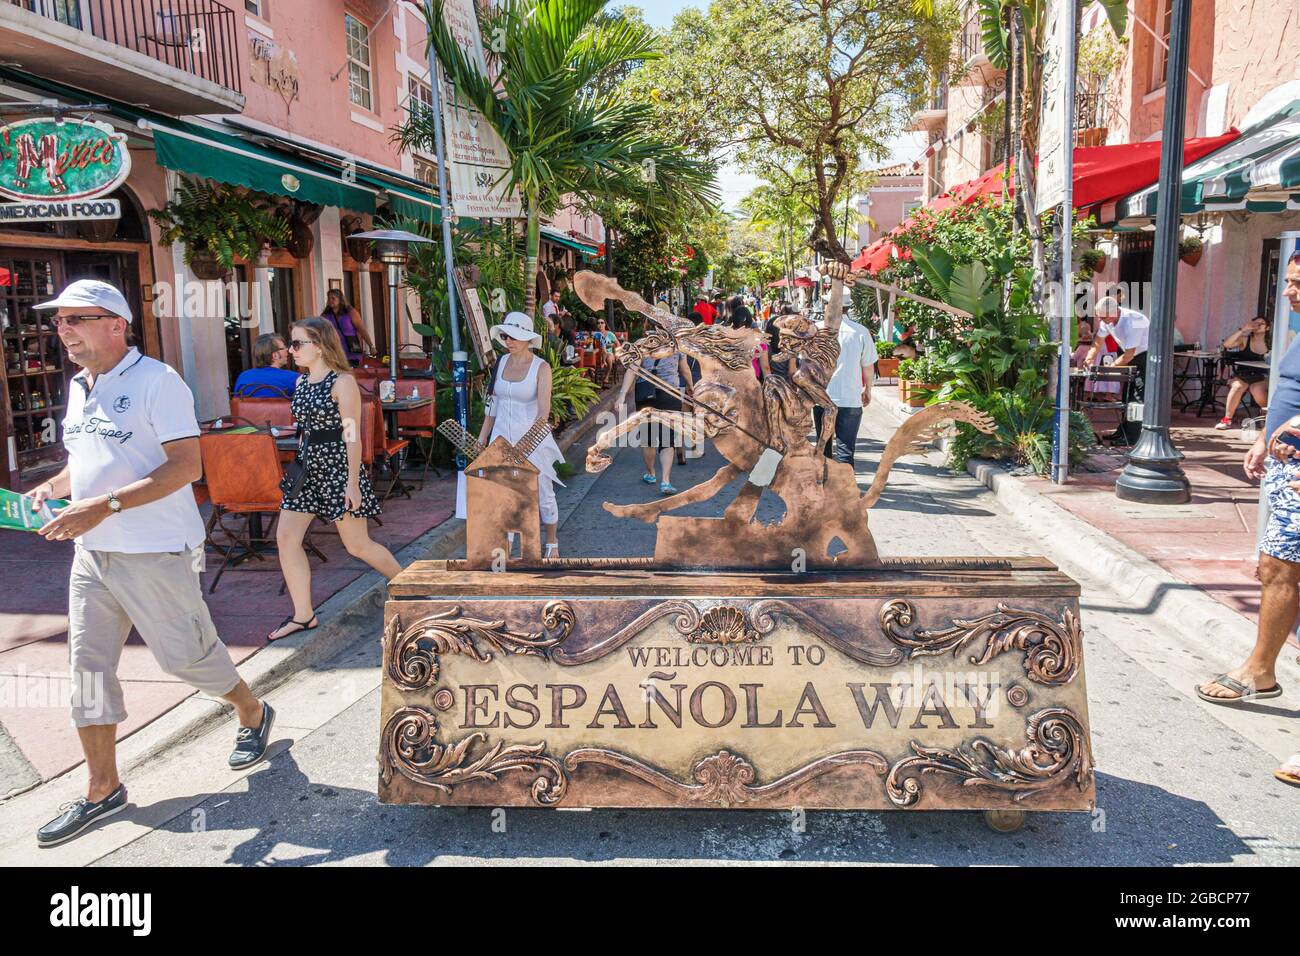 Miami Beach Florida, Espanola Way Spanish Village, Eingangsschild zur Begrüßung, historisches Wahrzeichen im Freien Restaurants Besucherattraktion Stockfoto